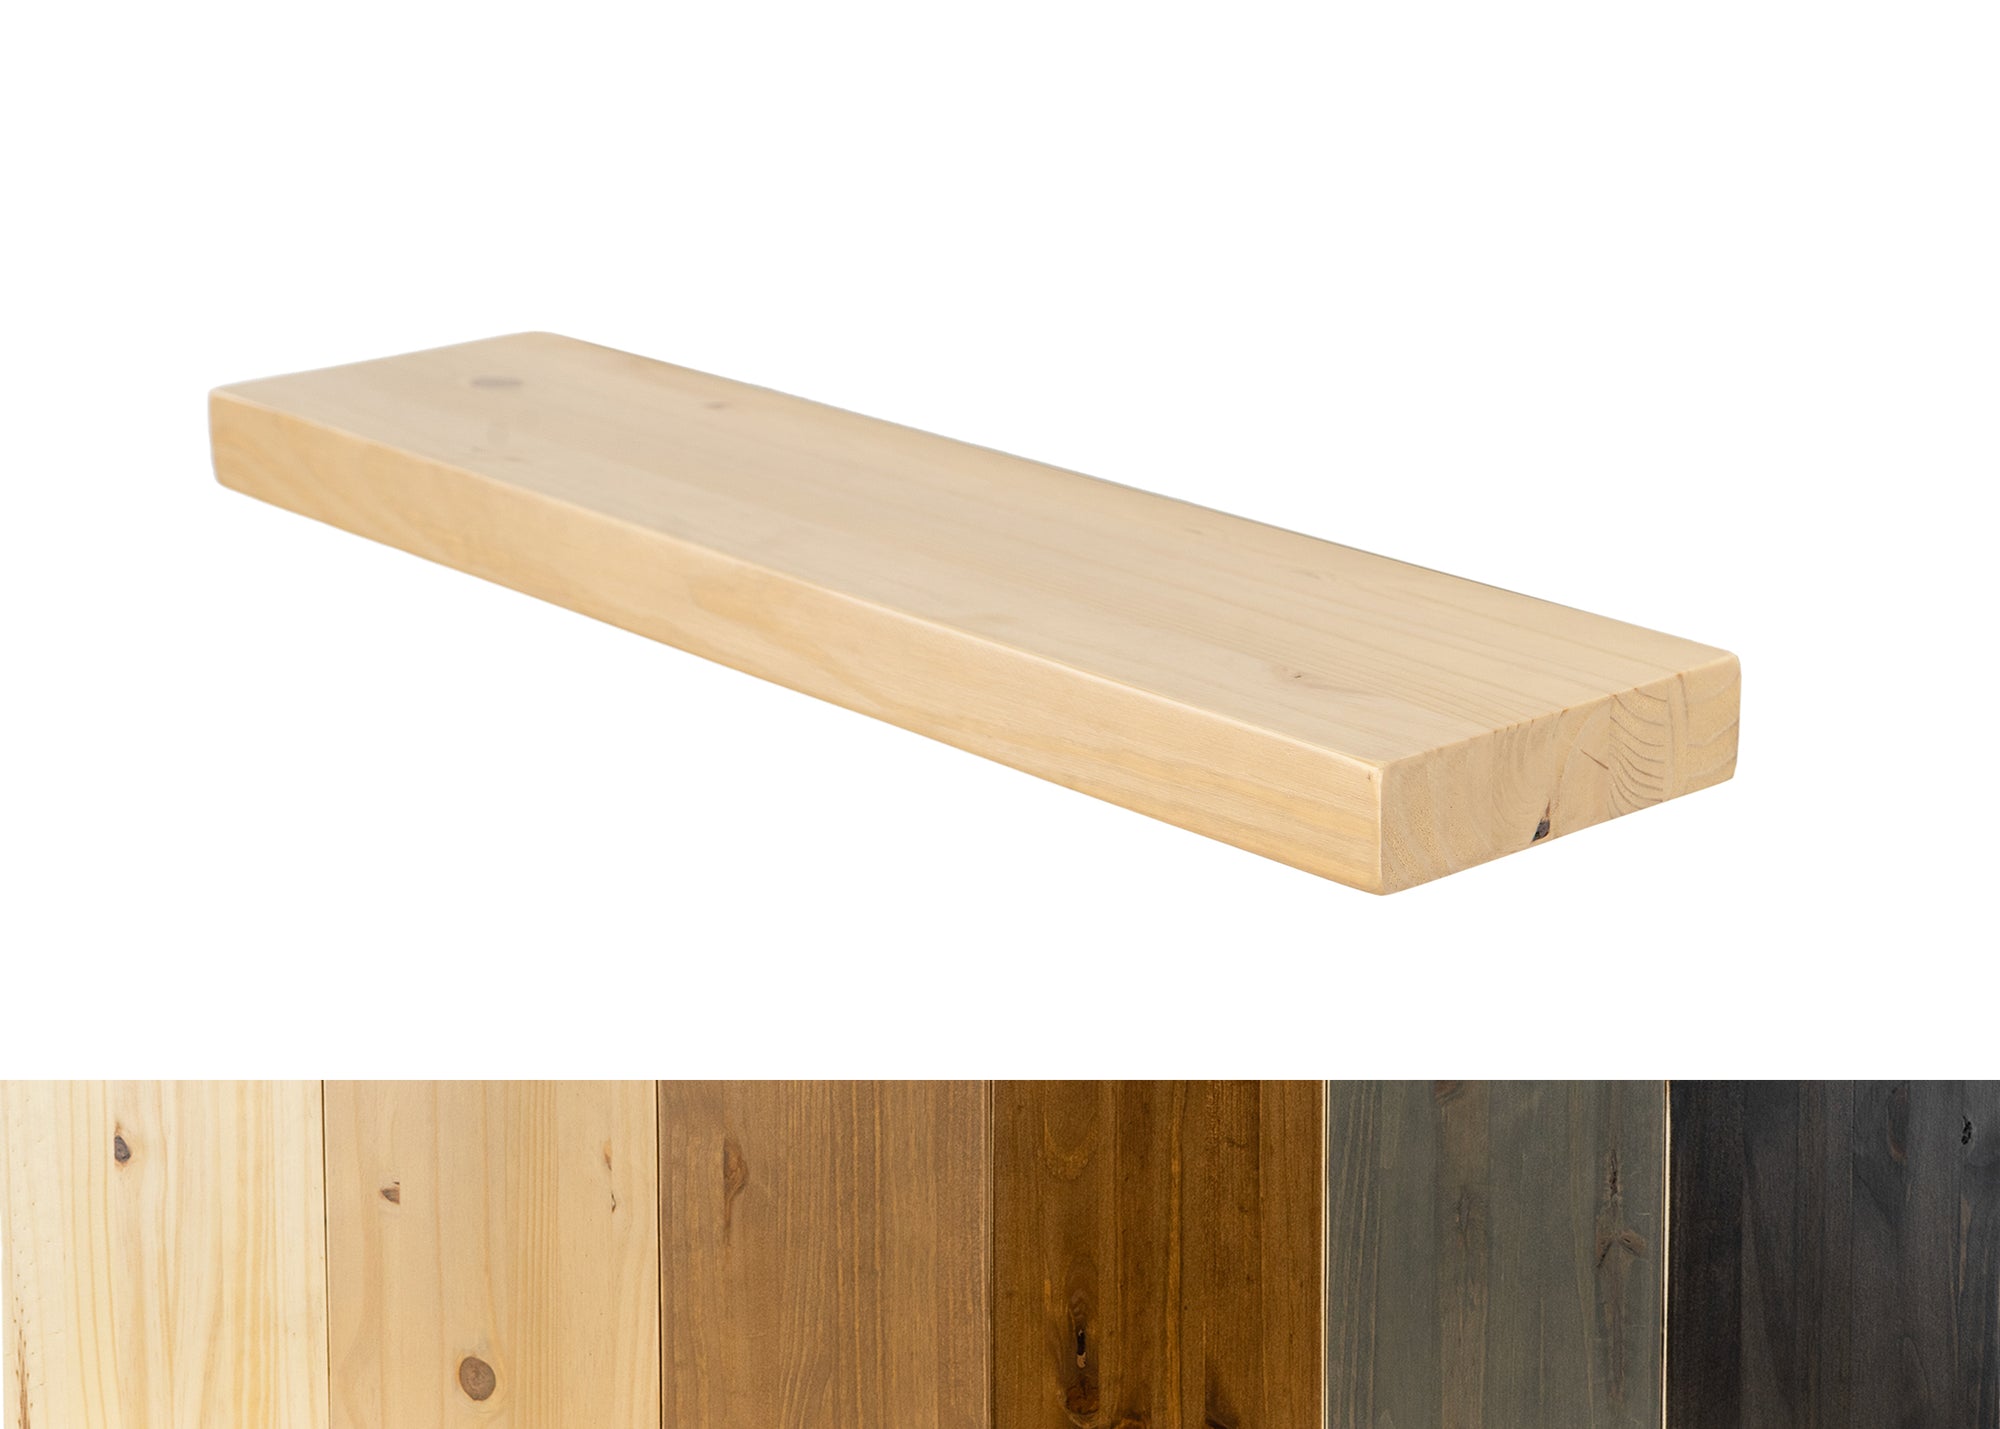 Sustain Floating Shelf Kit - Dakota Timber Co. Floating Shelves - Natural Wood Shelves - Made in USA Floating Shelves - Best Wood Shelves